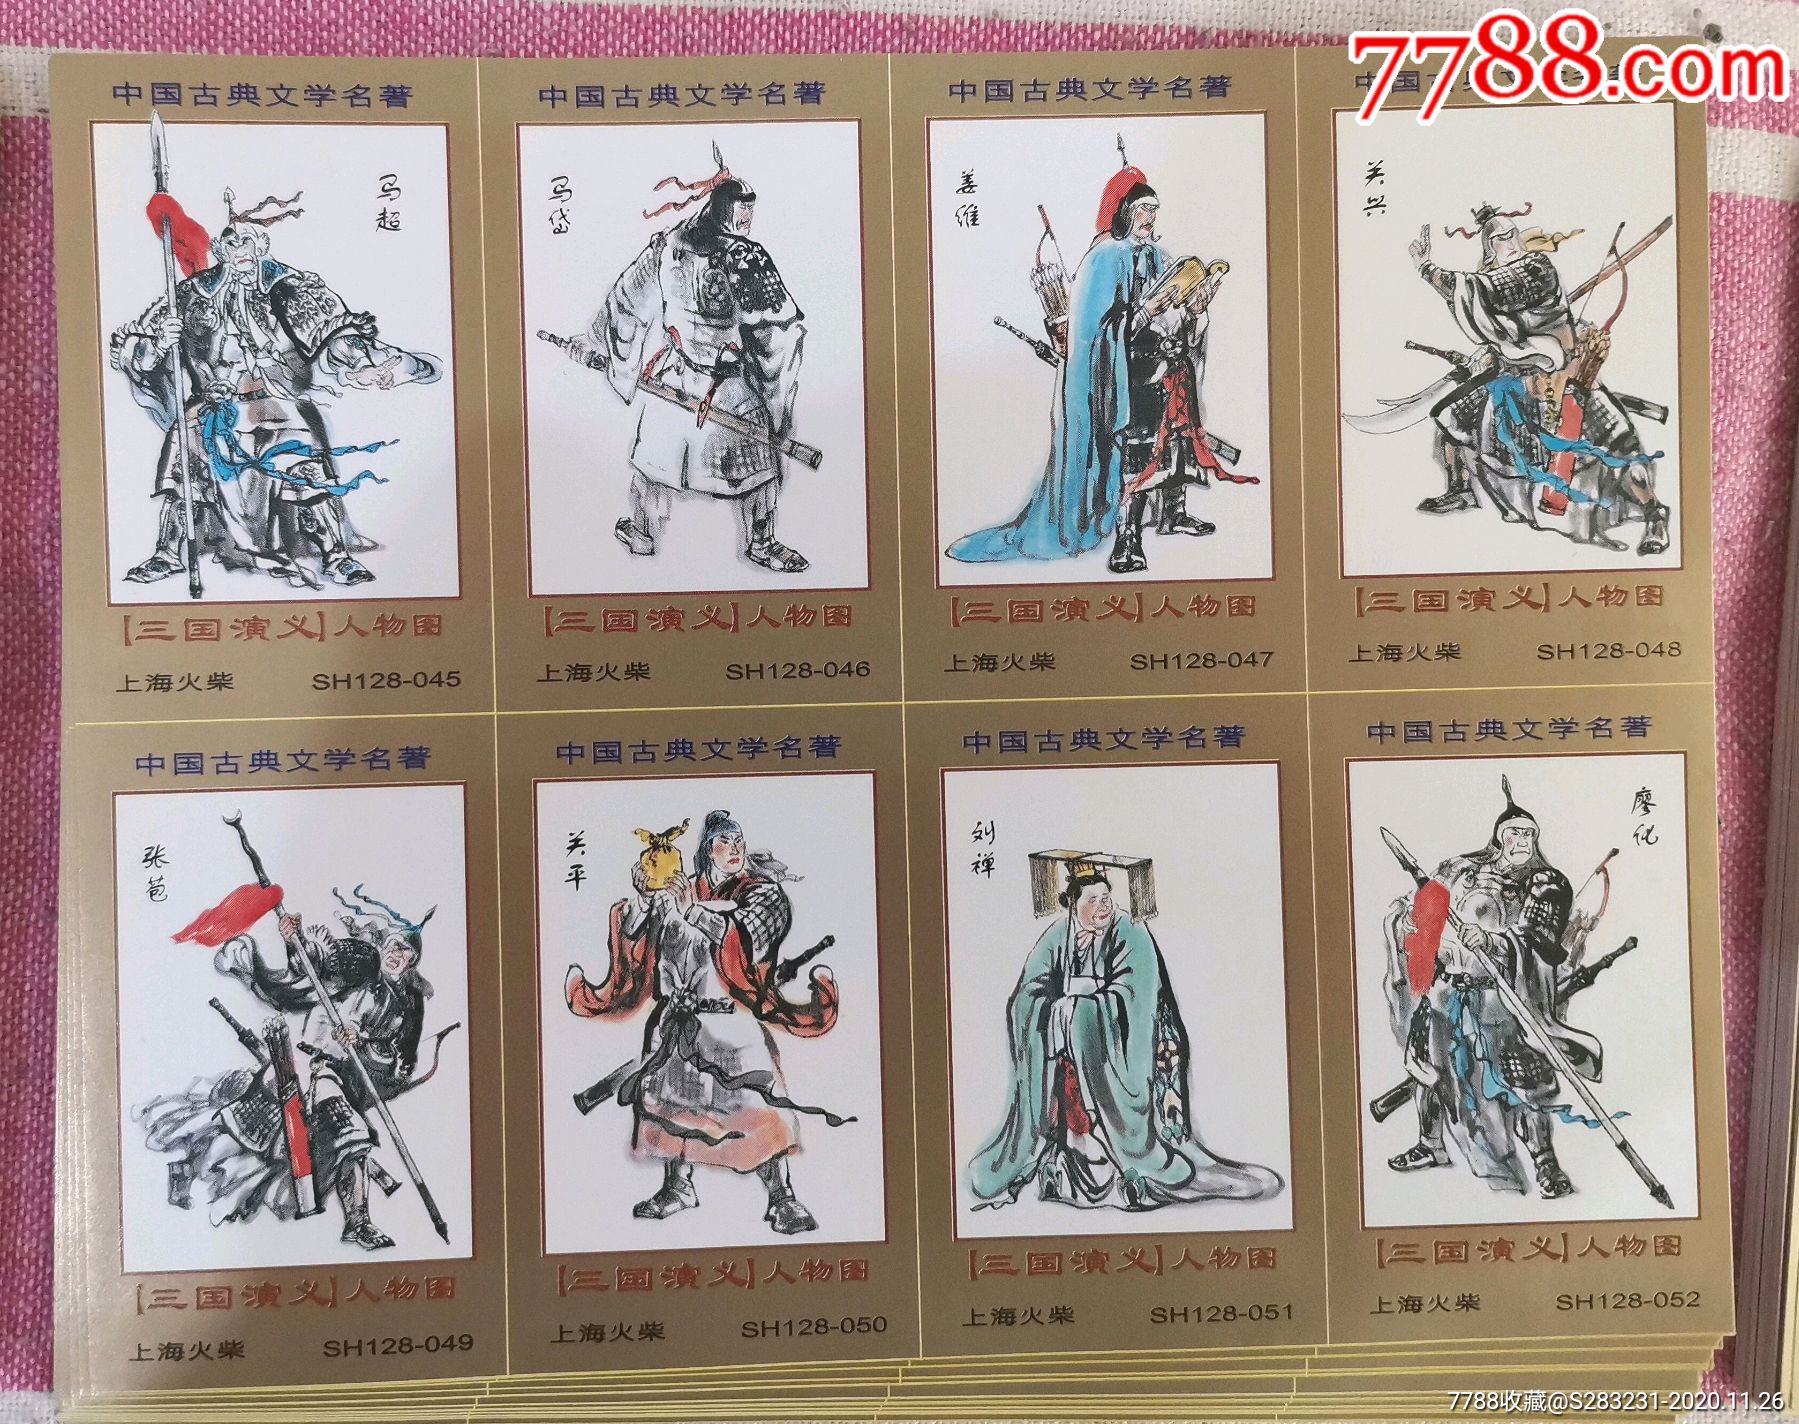 上海火柴厂火花:中国古典文学名著《三国演义》人物图,一套128 1=129